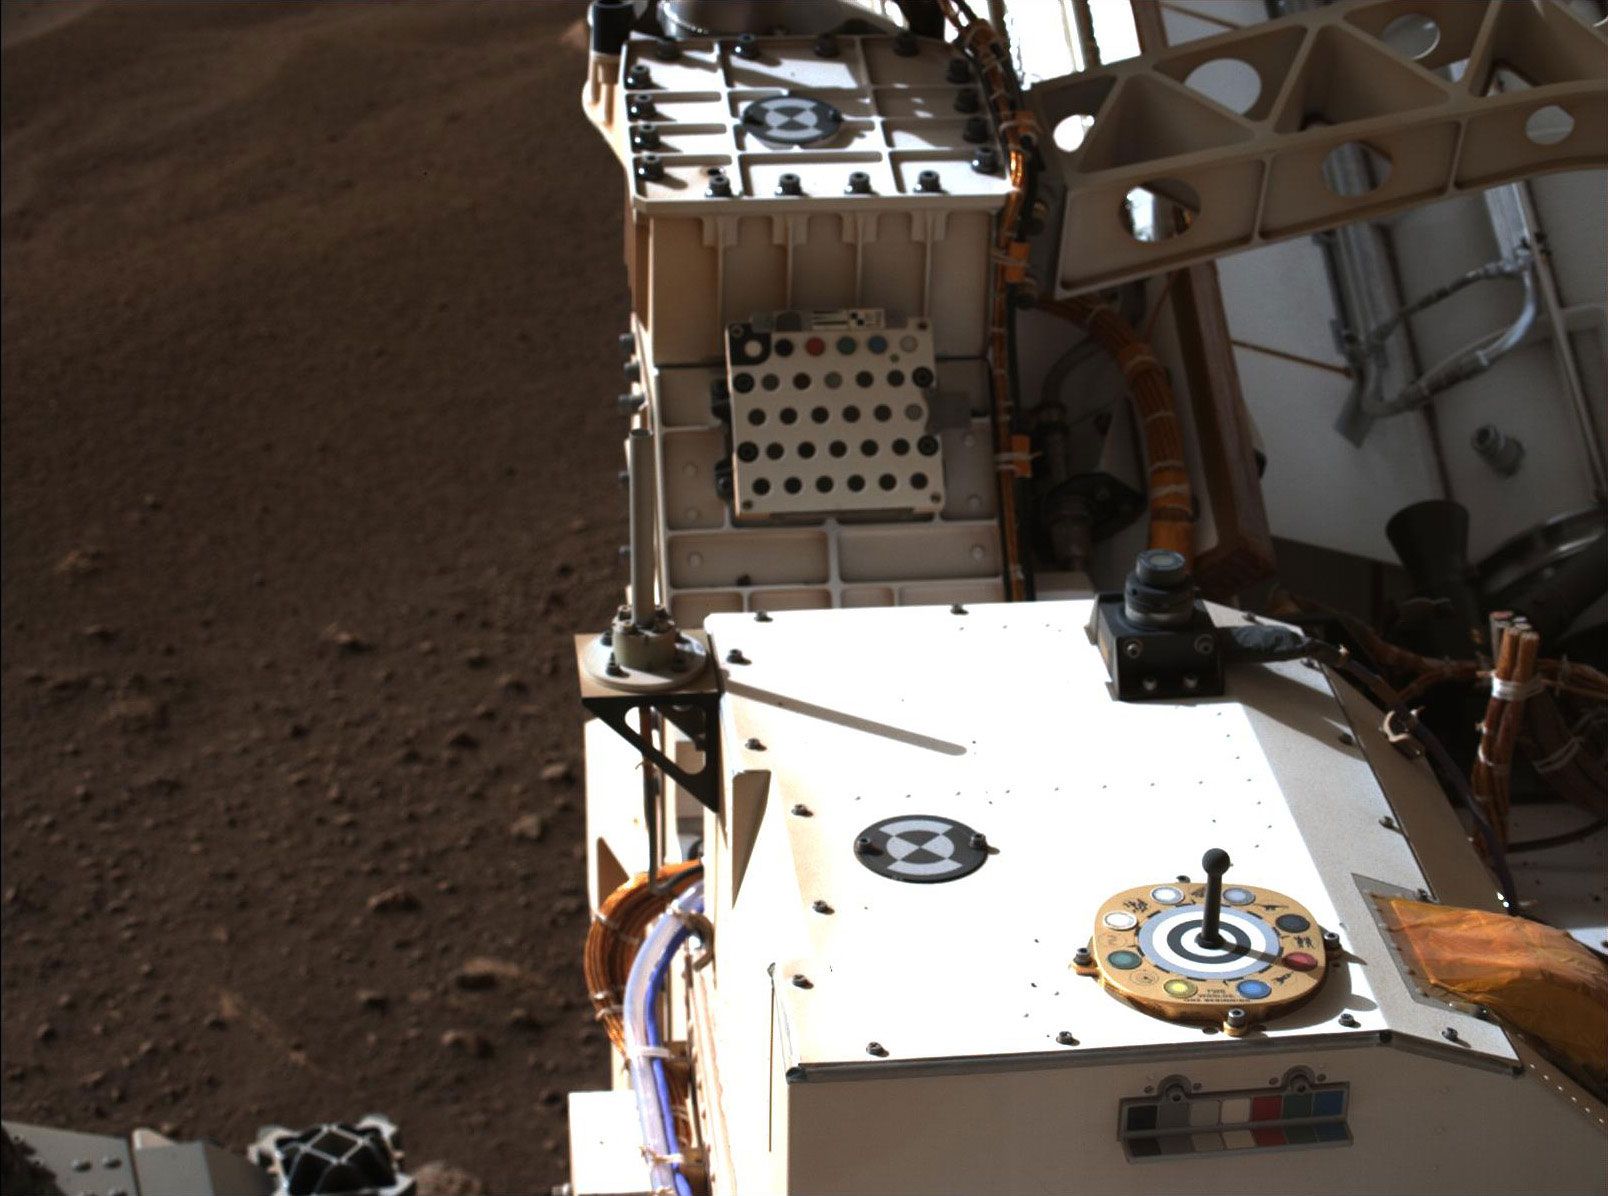 Снимка, направена от "Пърсивиърънс" от Марс